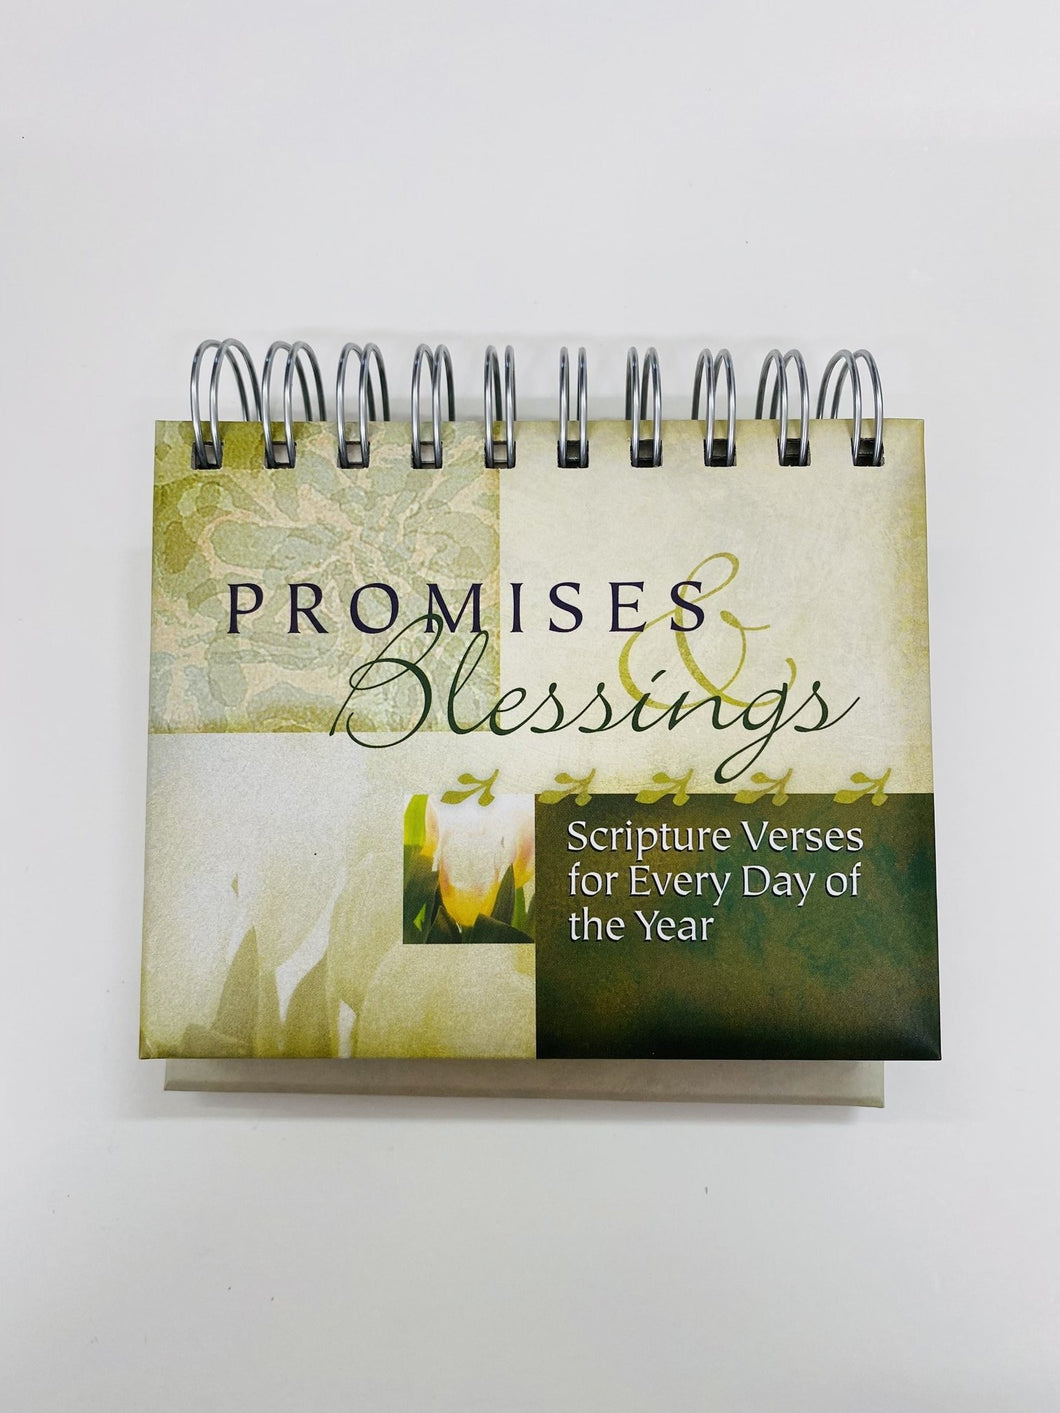 Day brightener: Promises & Blessings